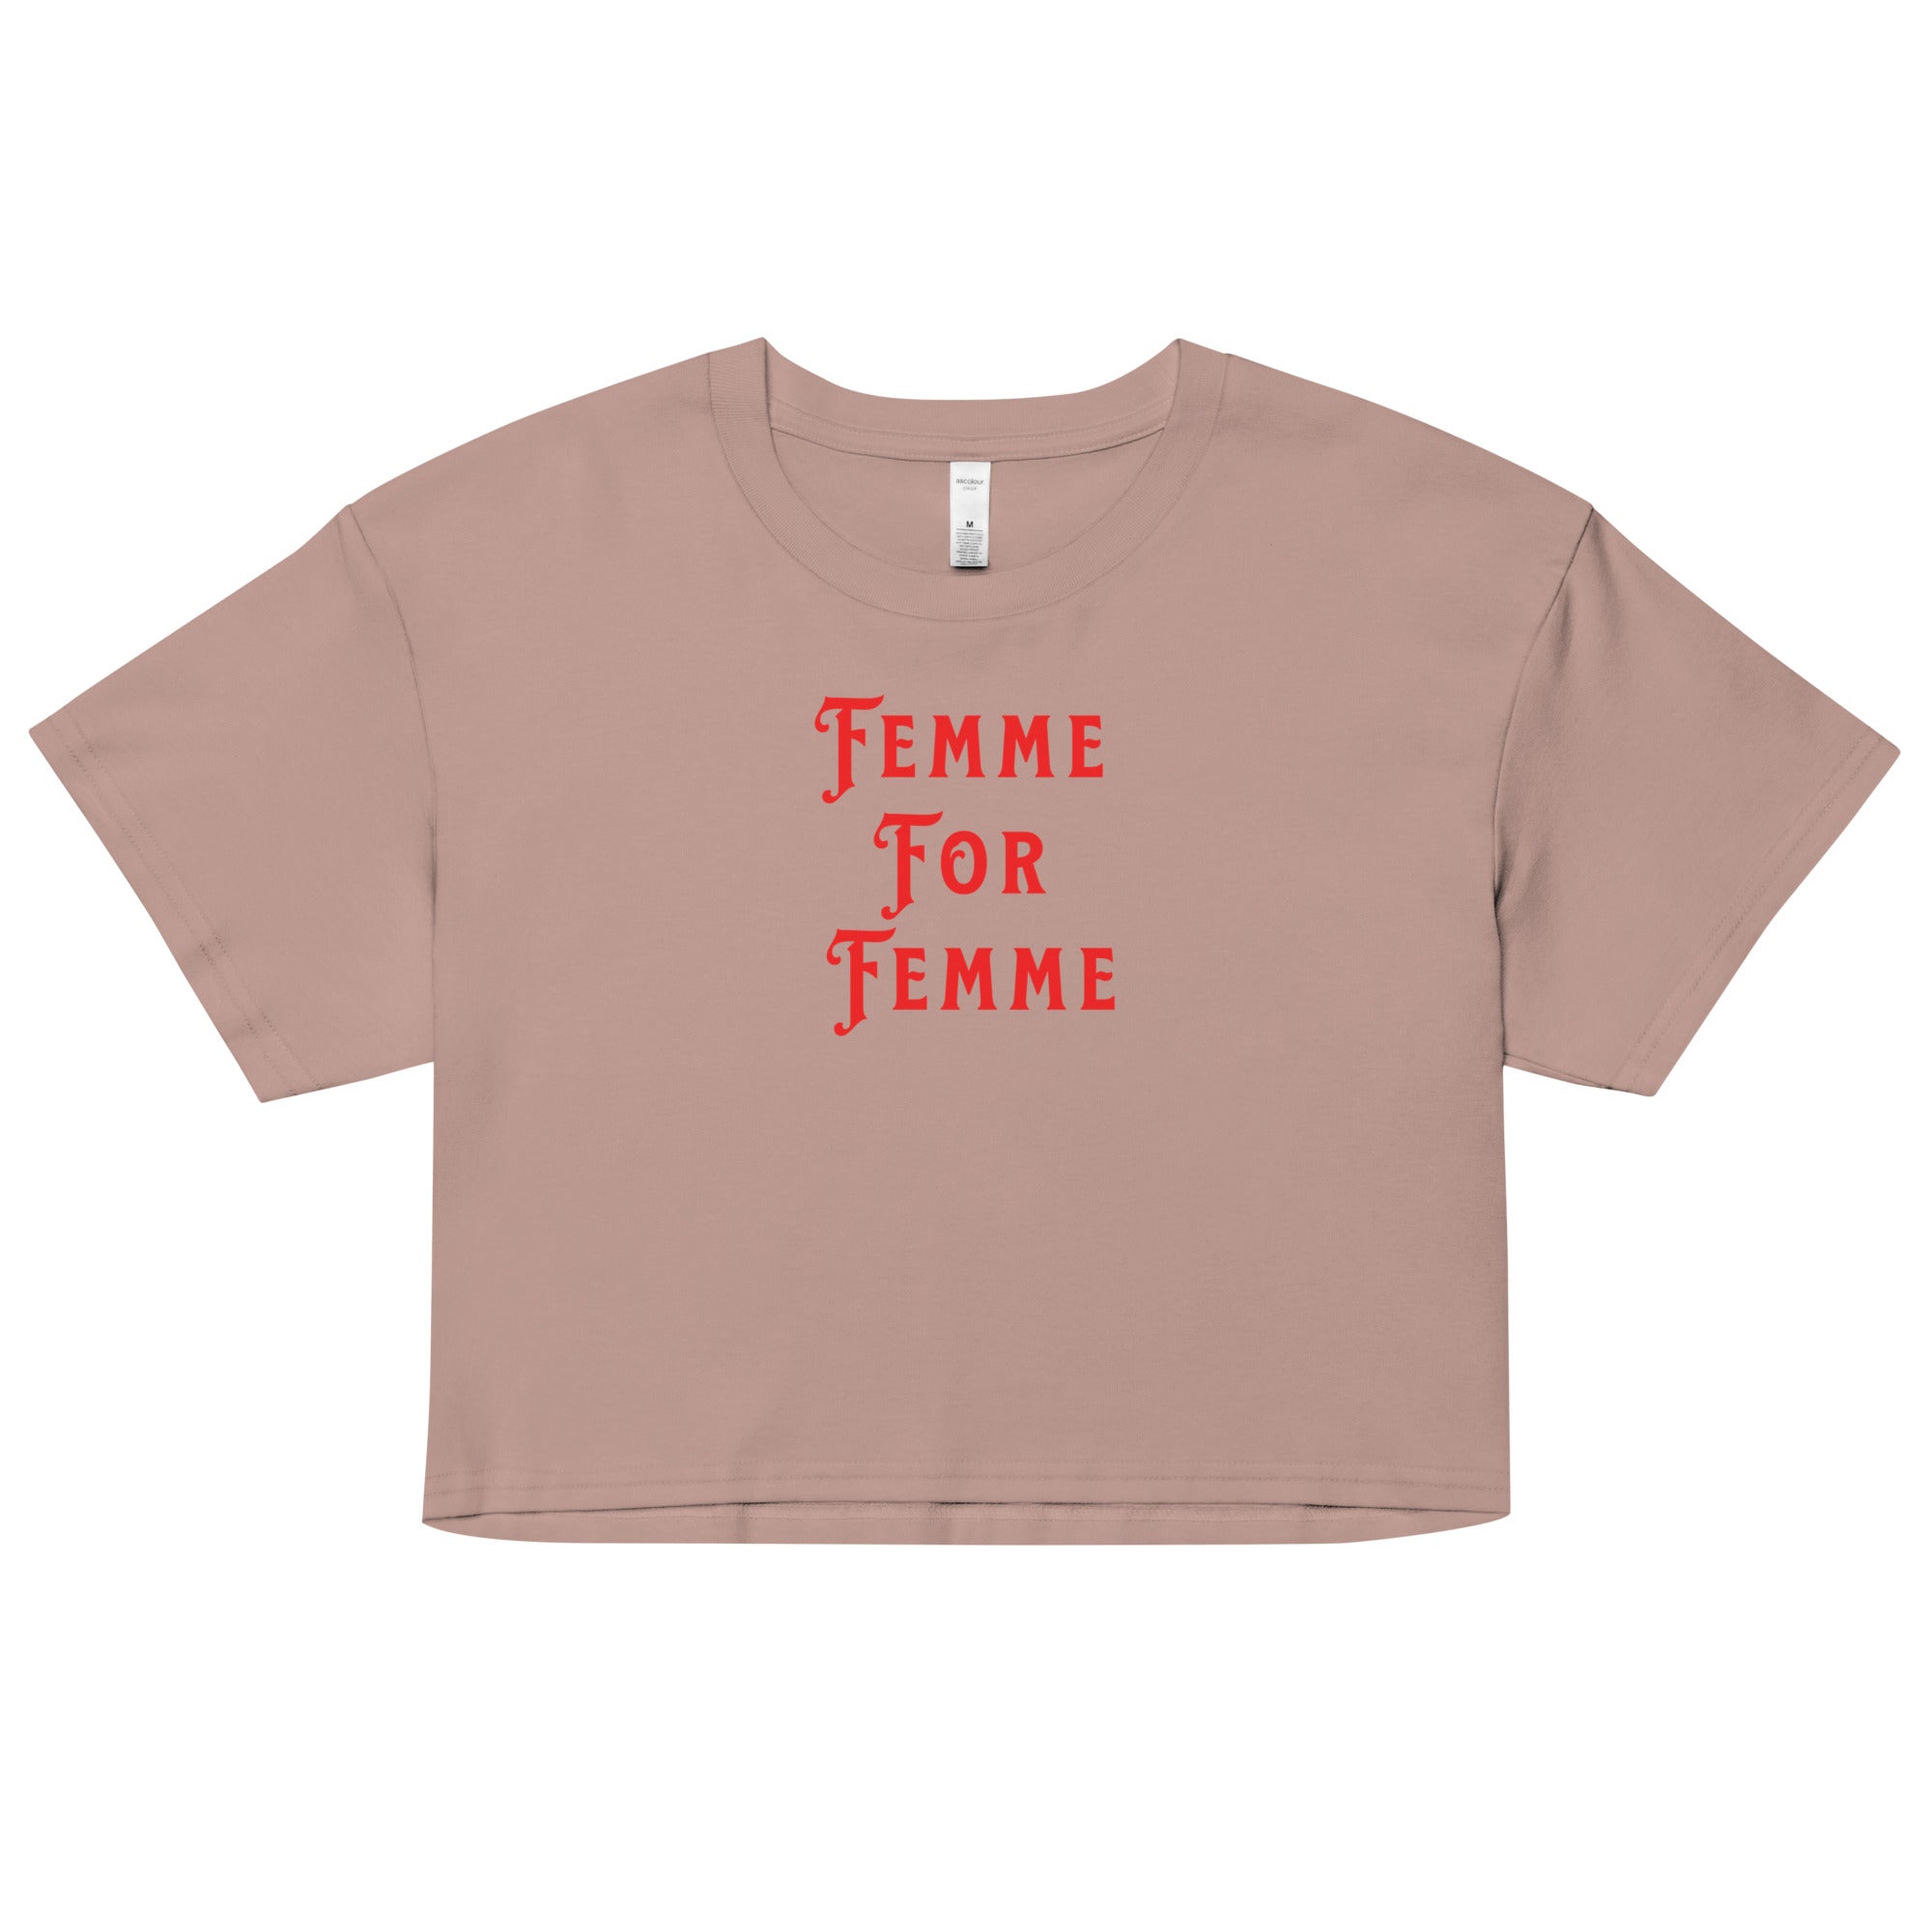 LGBT_Pride-Femme For Femme crop top - Rose Gold Co. Shop